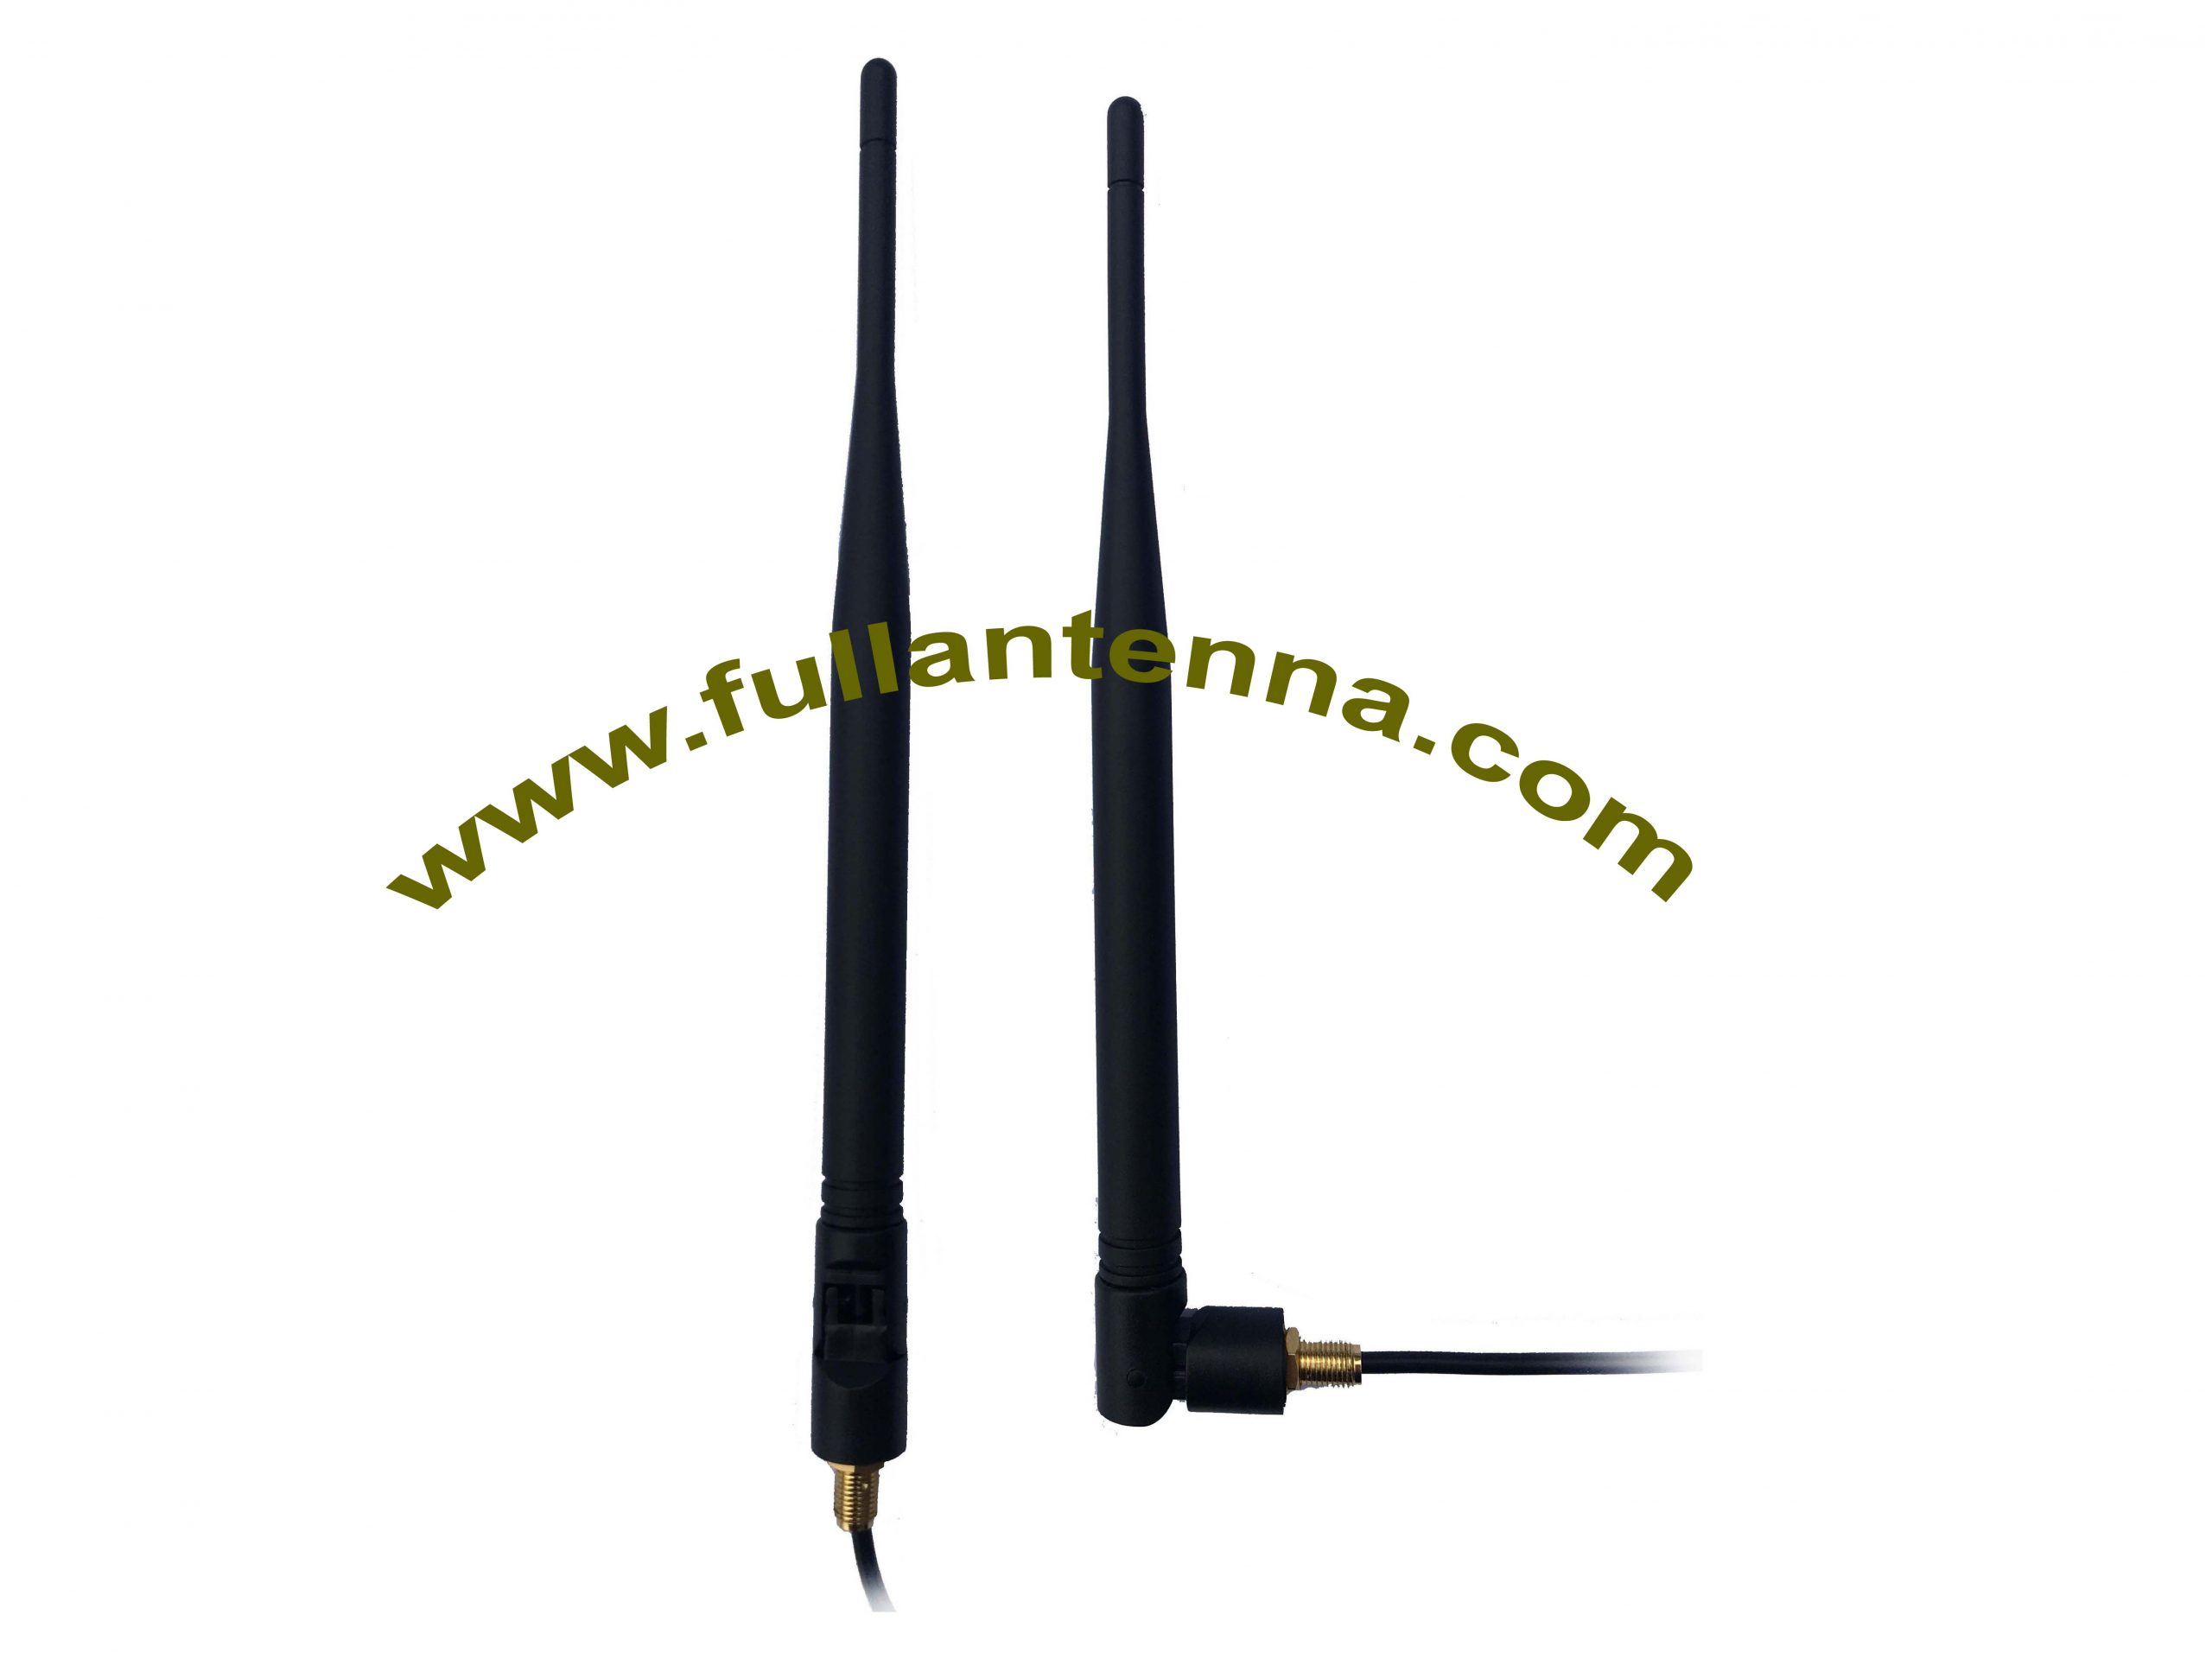 P / N: FAGSM.1102, Antena zewnętrzna GSM, antena do urządzenia pojazdu GSM